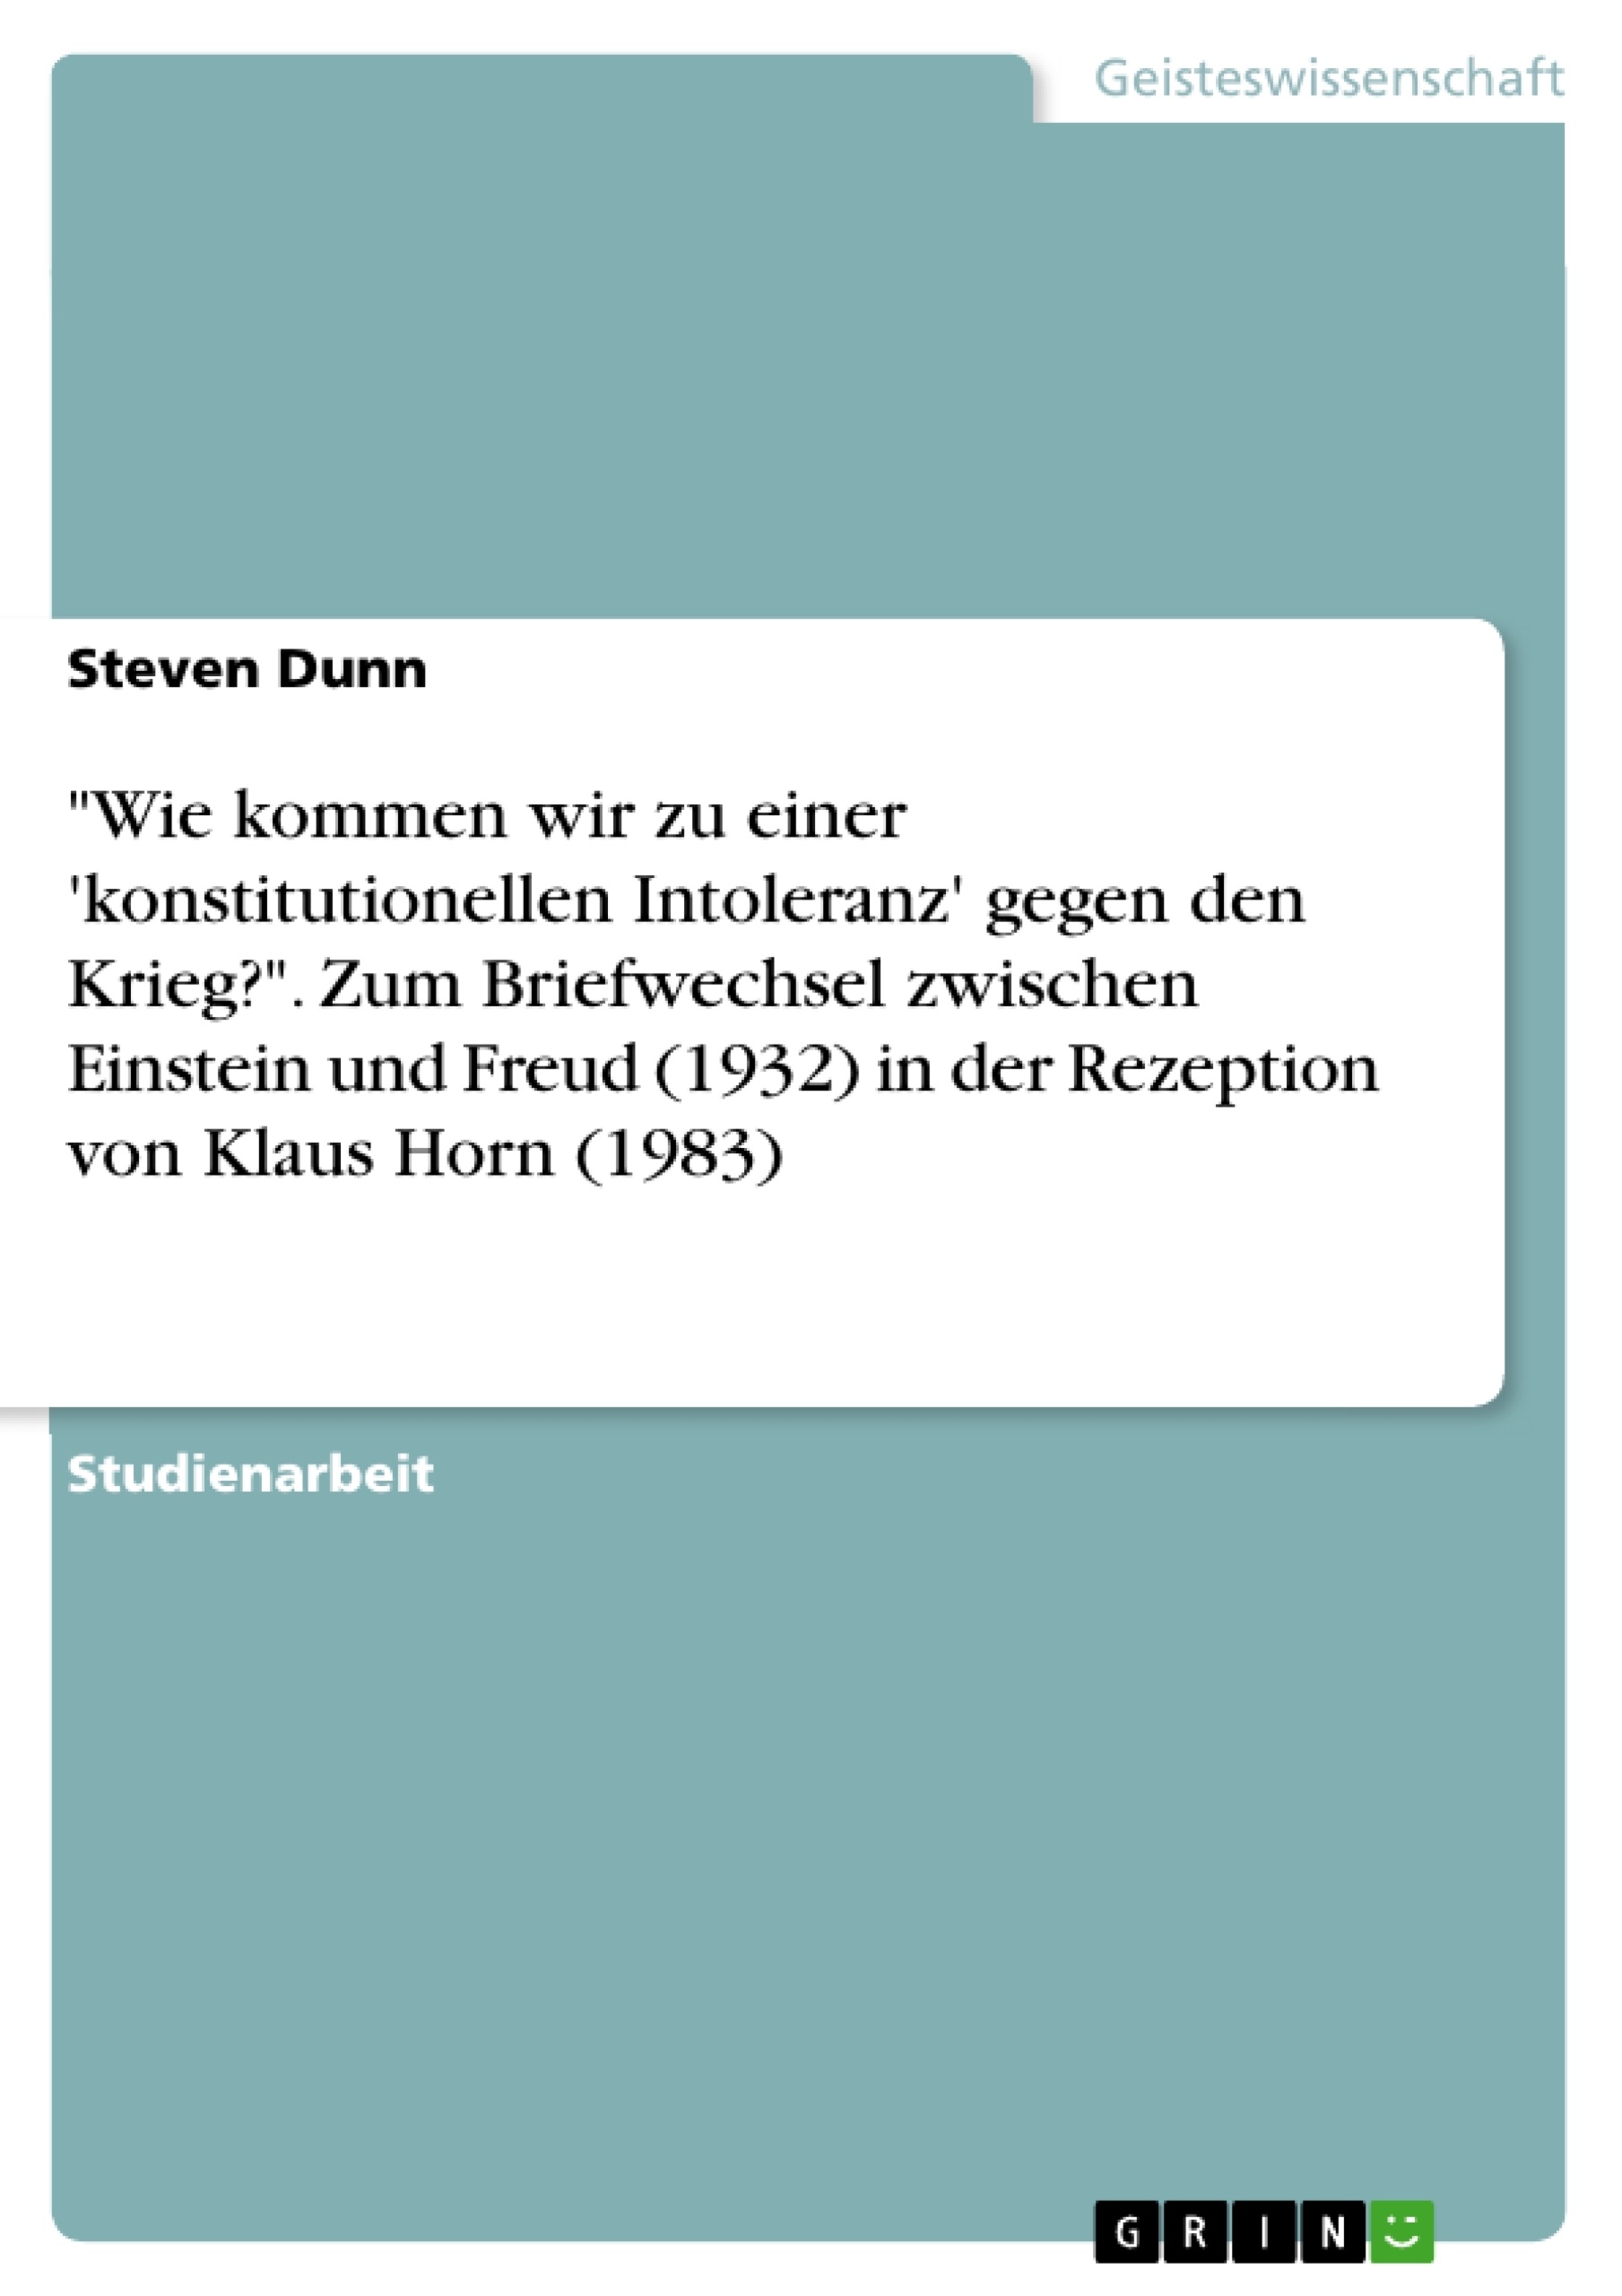 Título: "Wie kommen wir zu einer 'konstitutionellen Intoleranz' gegen den Krieg?". Zum Briefwechsel zwischen Einstein und Freud (1932) in der Rezeption von Klaus Horn (1983)